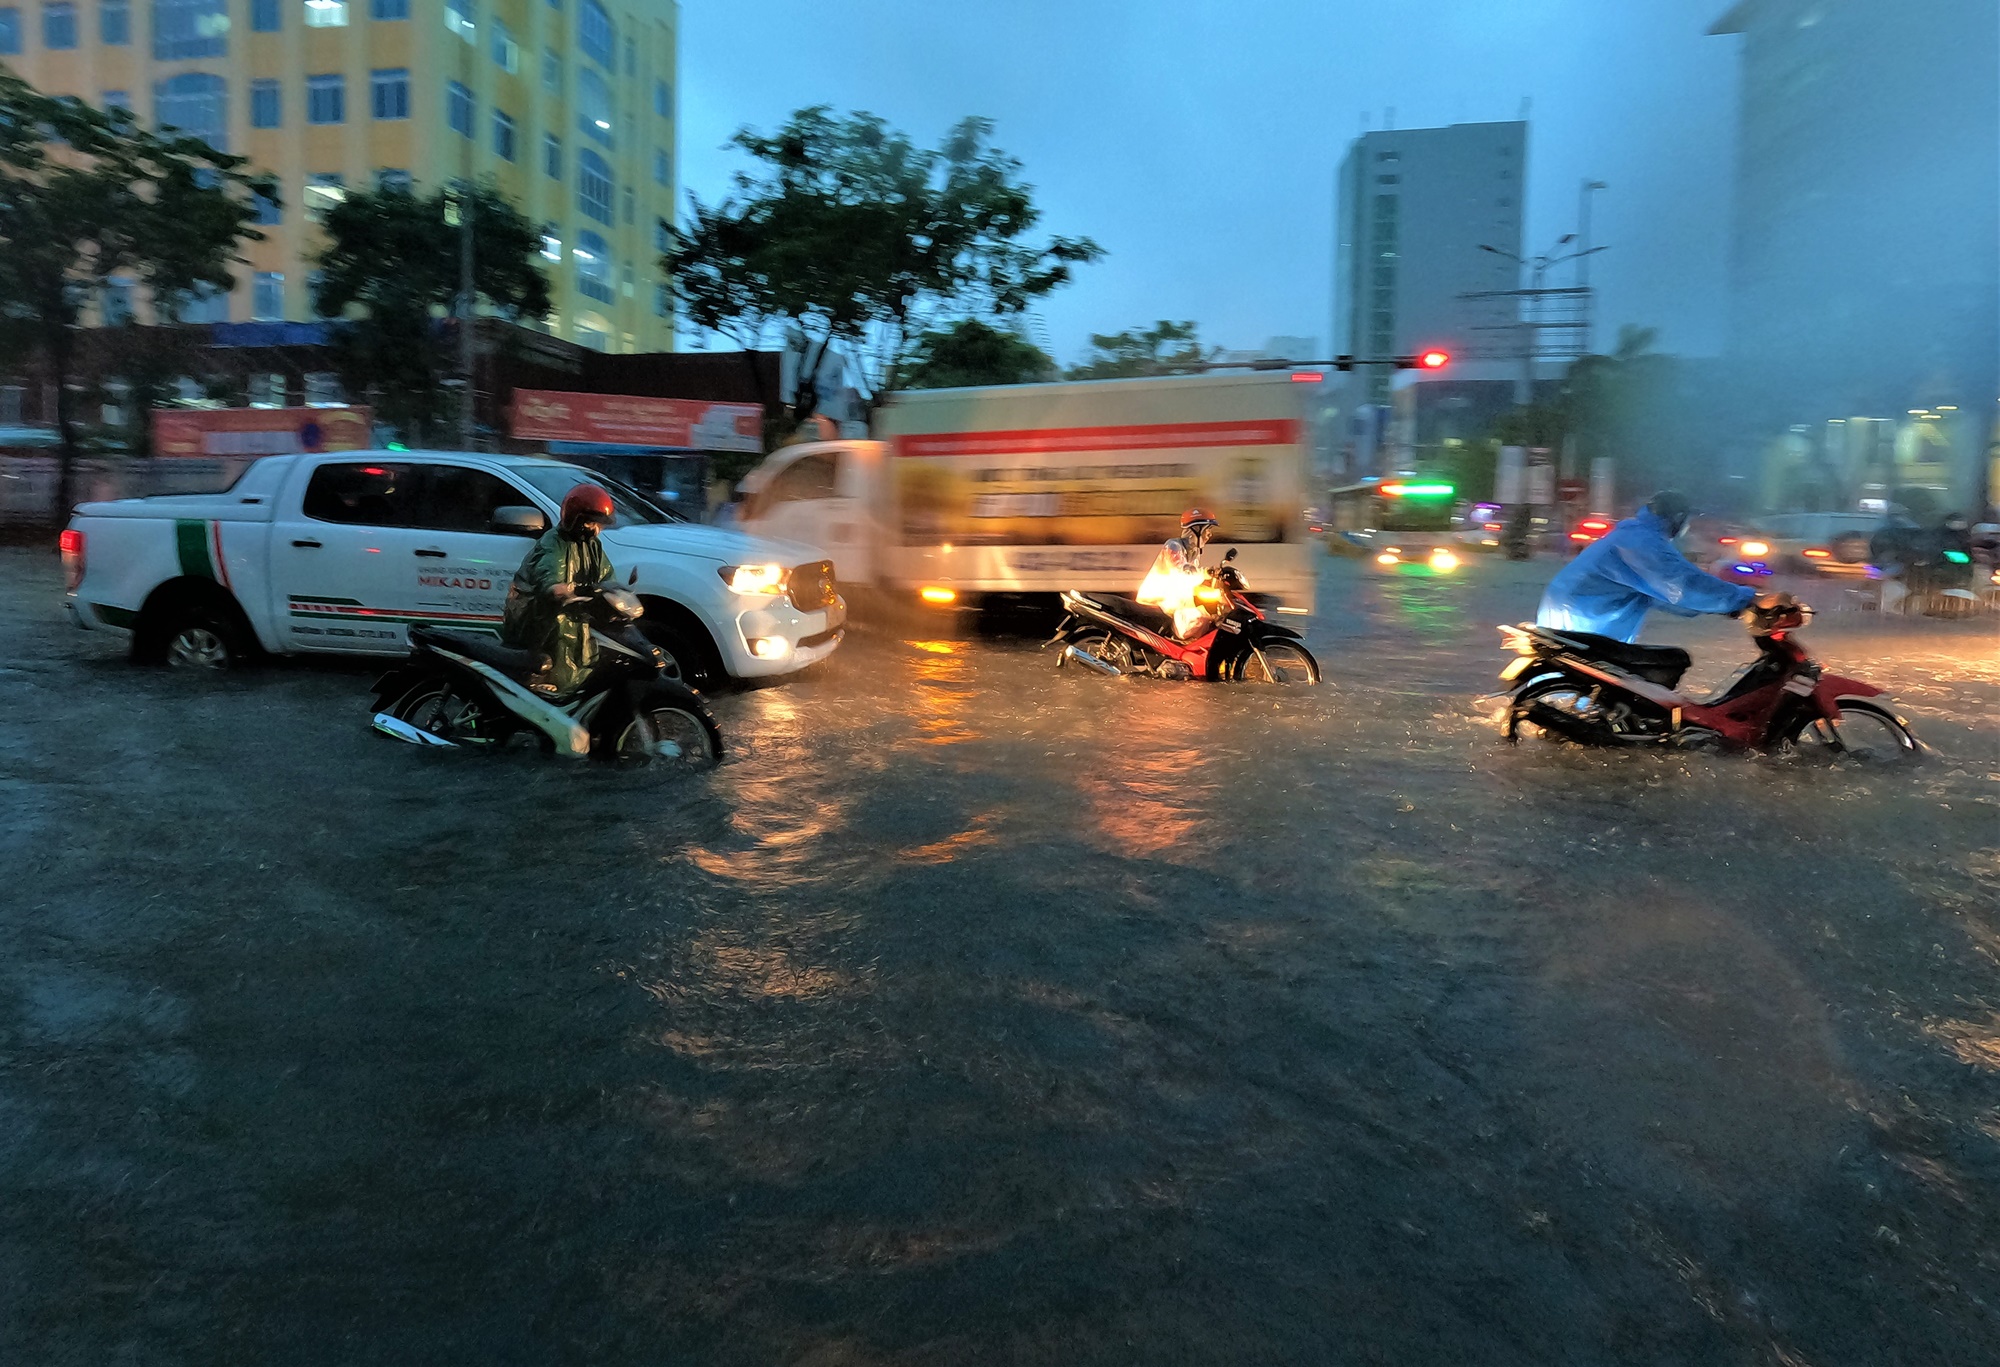 Clip, ảnh: Đường phố Đà Nẵng thành sông sau mưa, người dân dắt xe bì bõm về nhà - Ảnh 5.